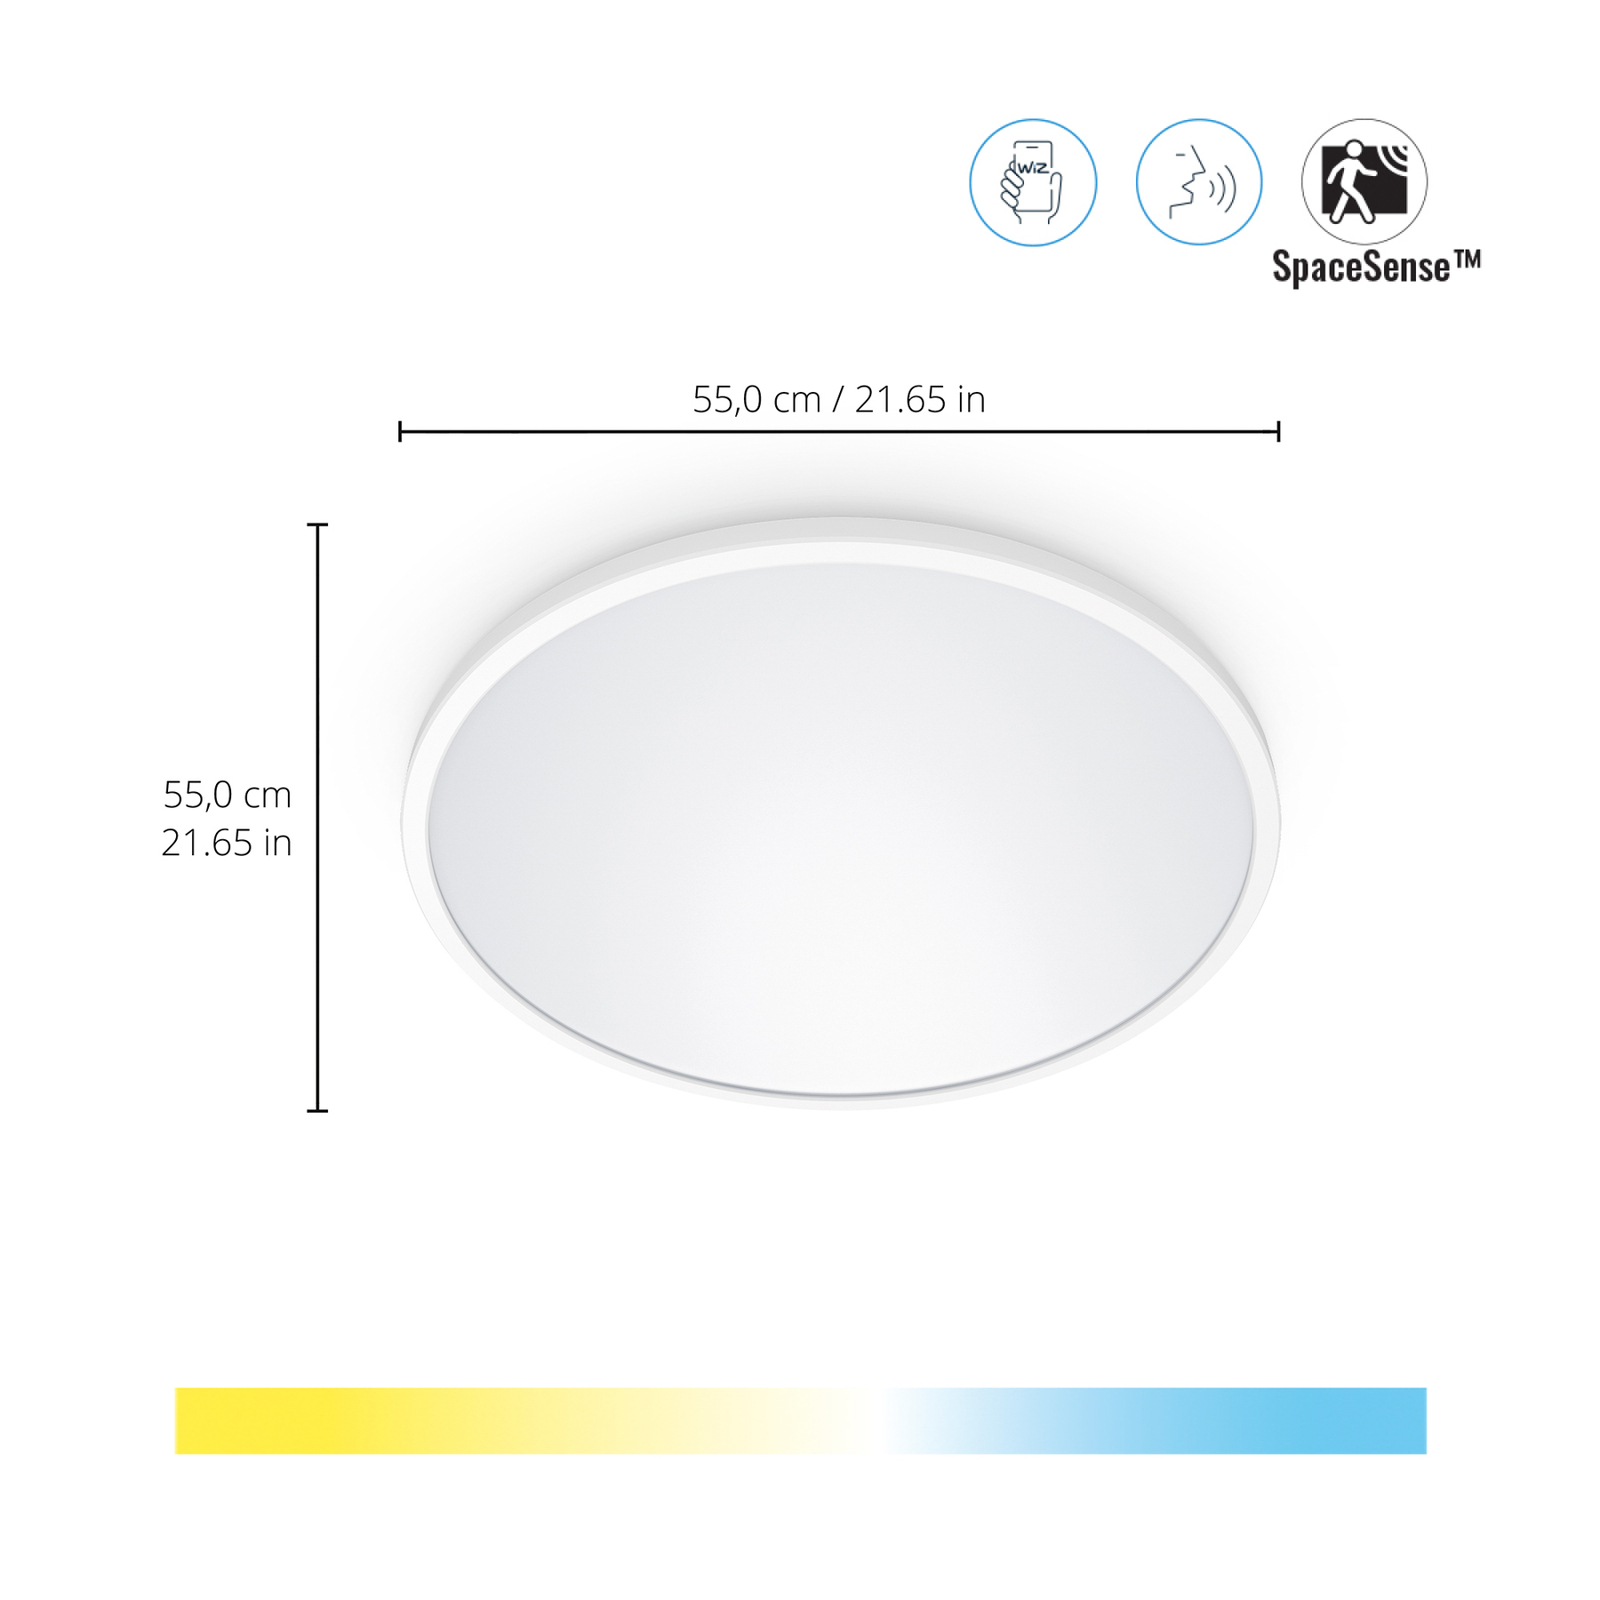 WiZ SuperSlim LED-loftslampe CCT Ø55cm hvid